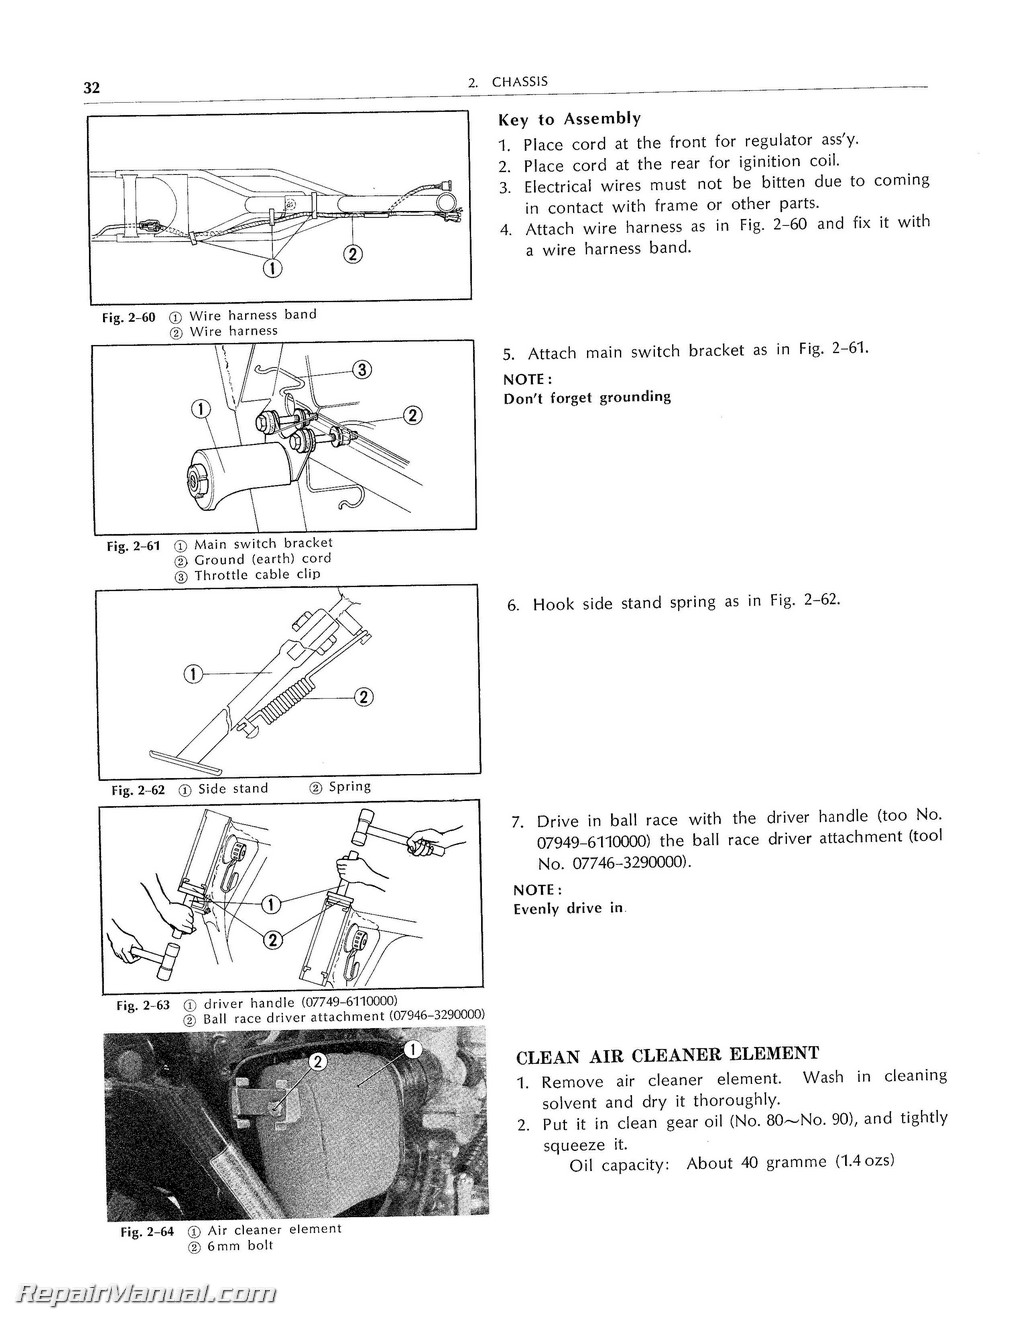 1972 Honda motorcycle service manual #6